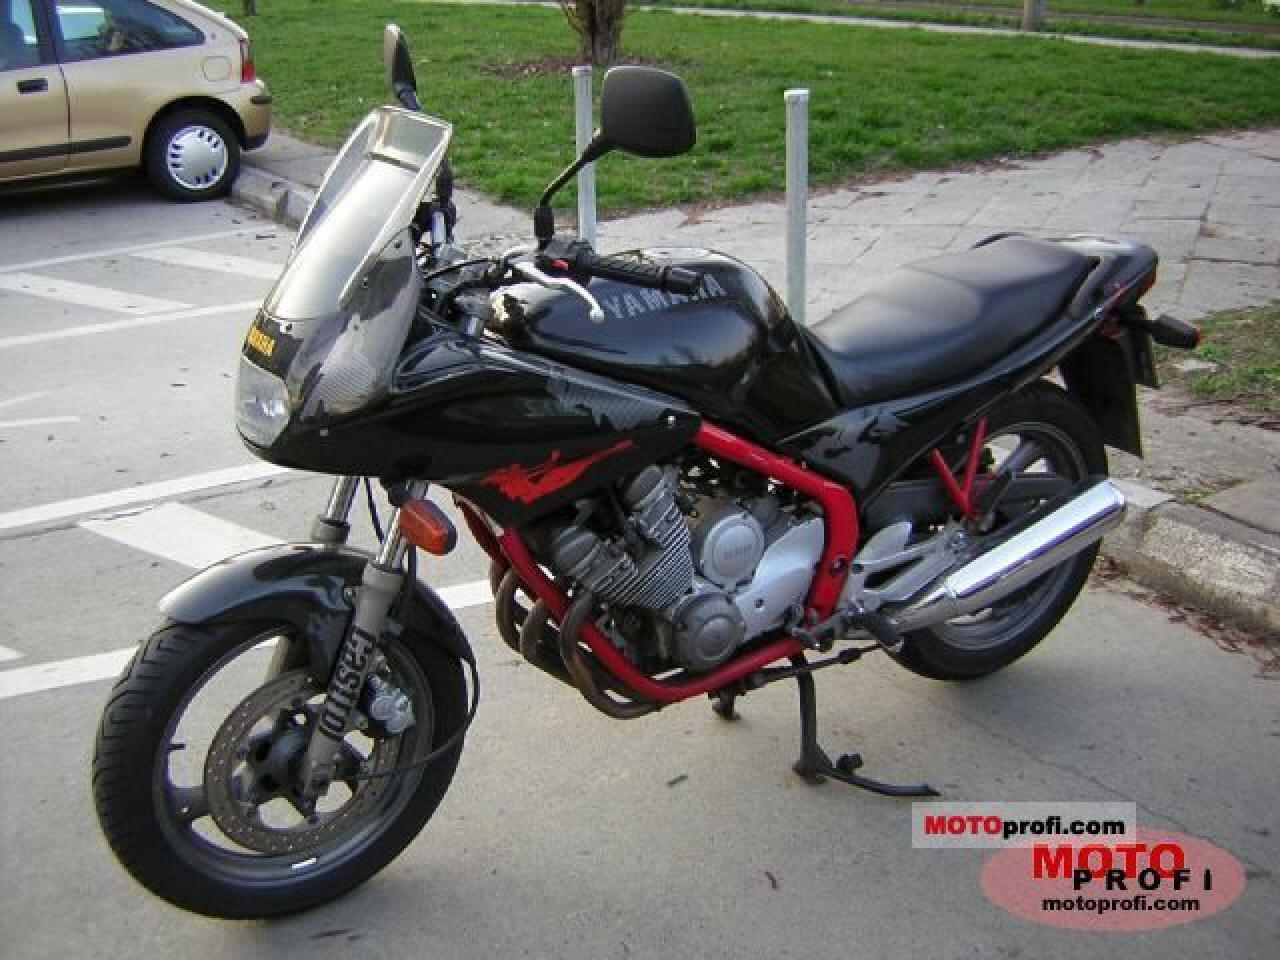 Moto del día: Yamaha XJ 600 S Diversion | espíritu RACER moto